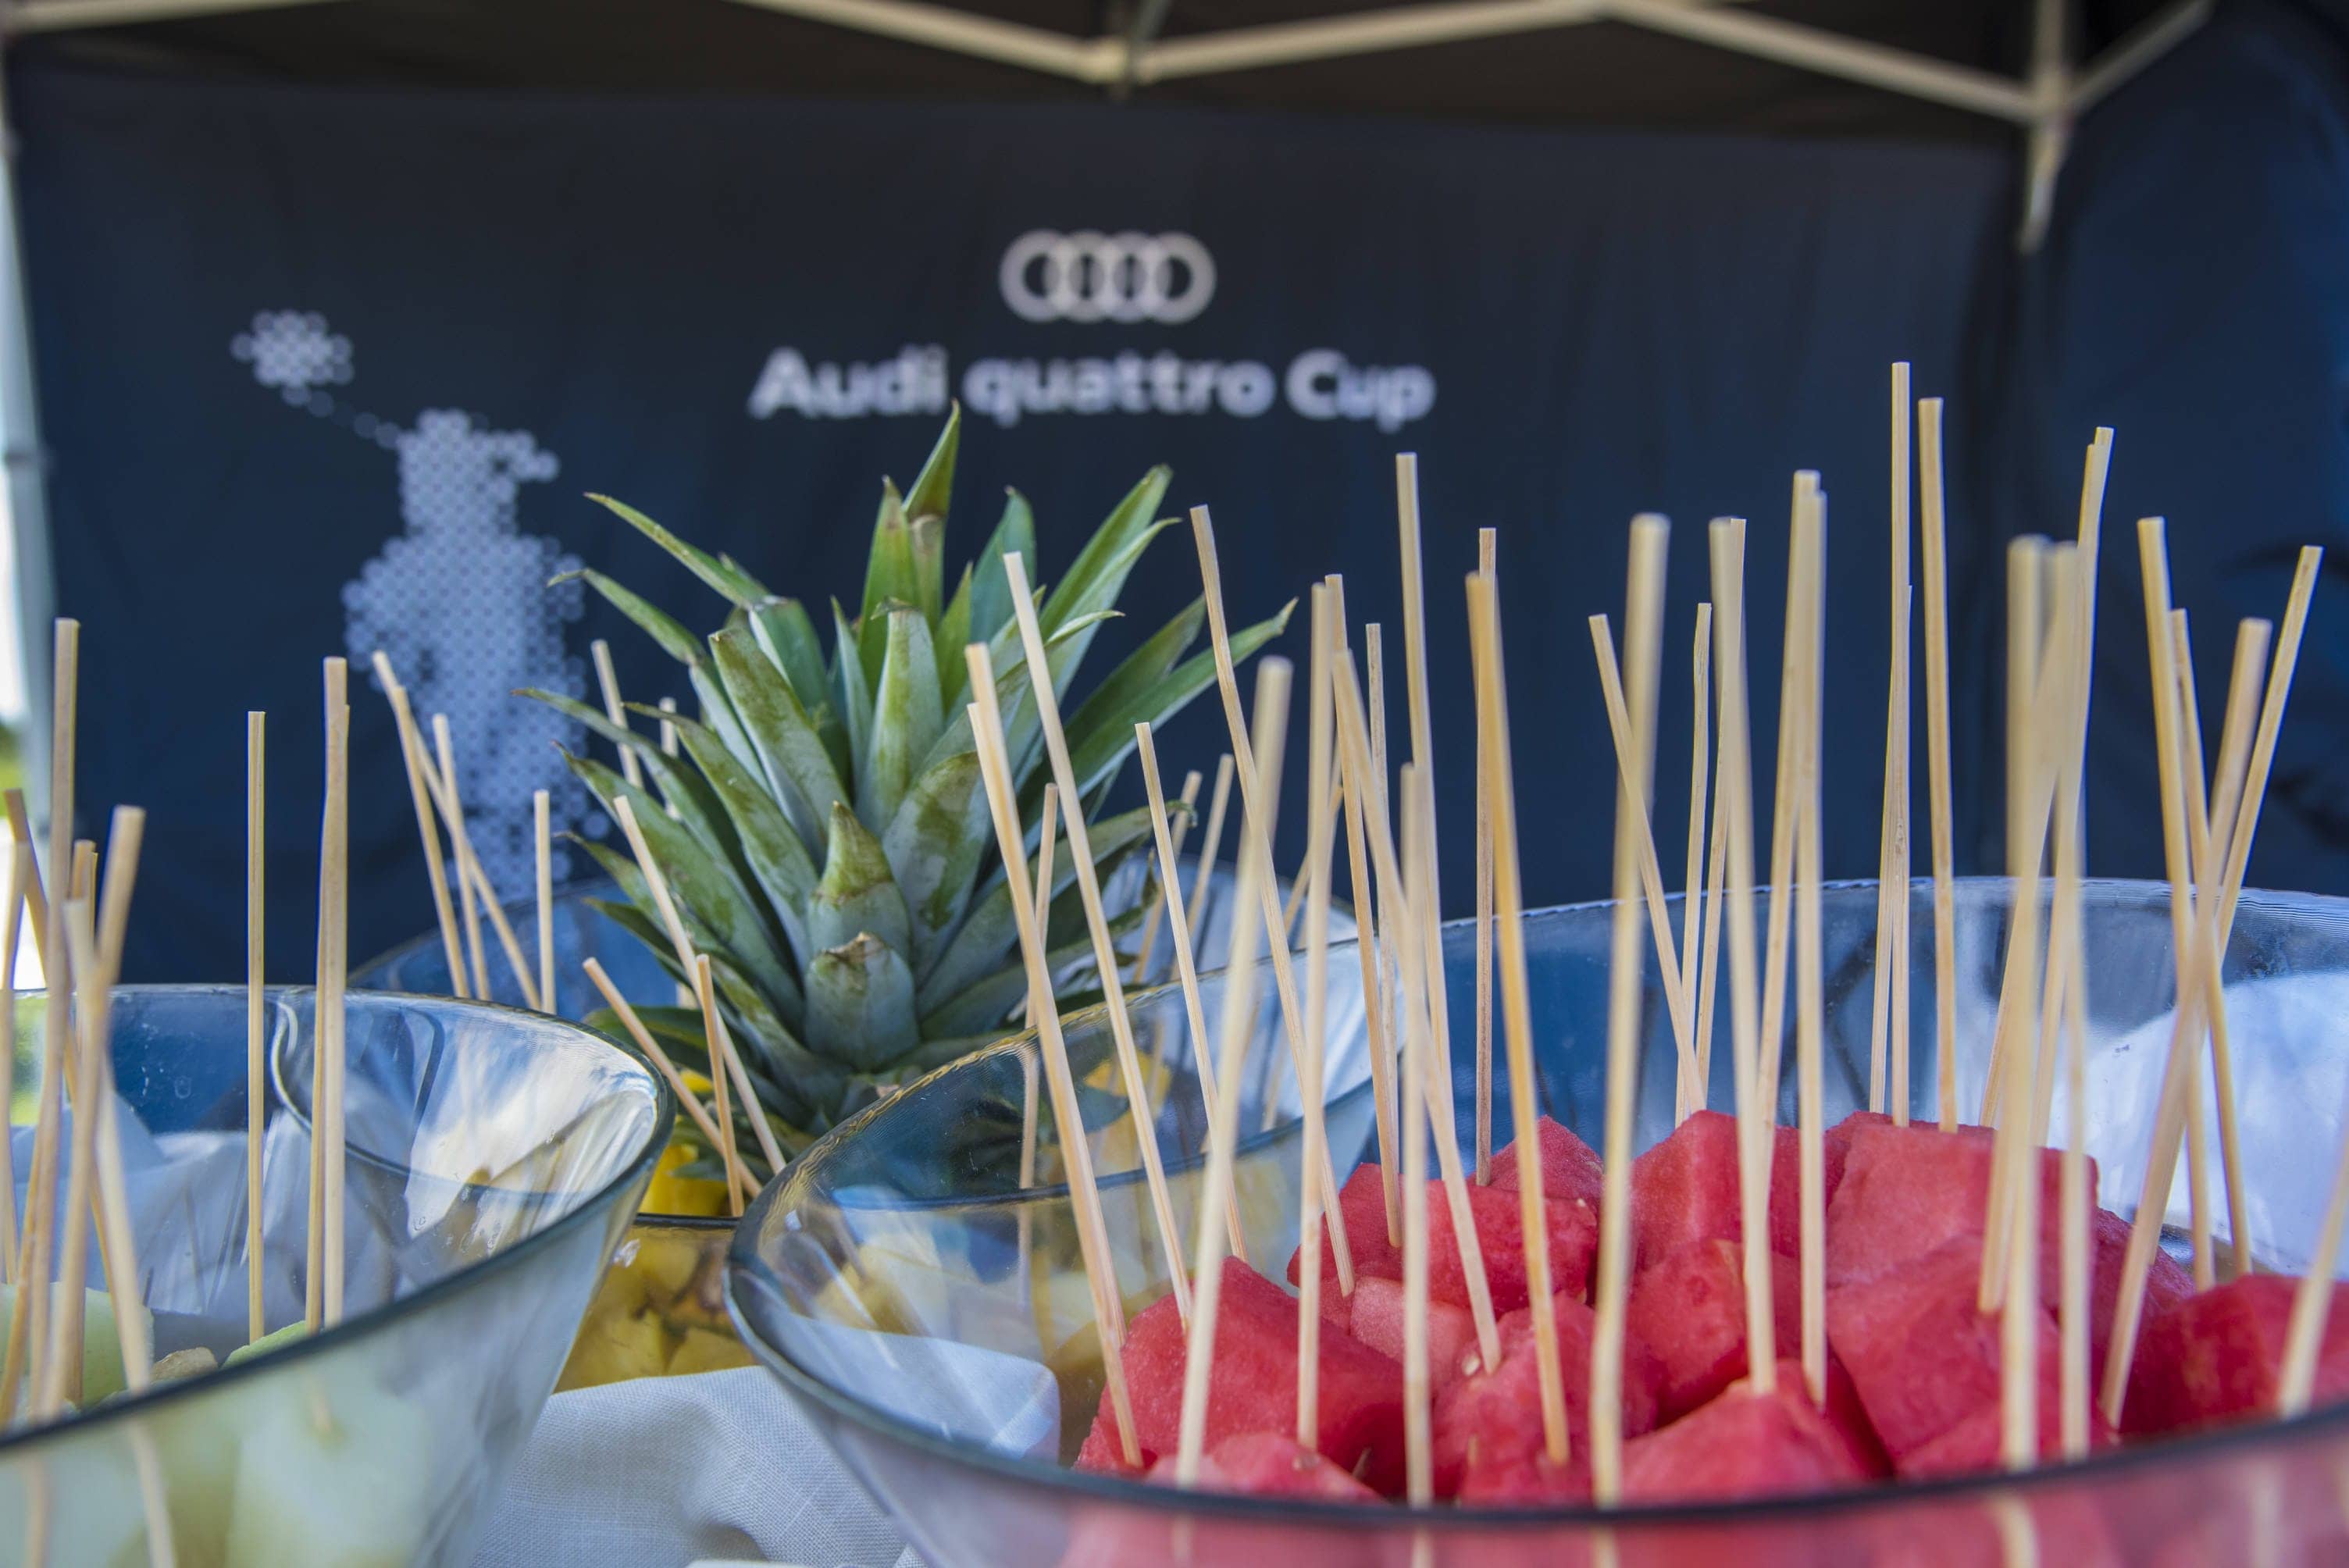 Audi quattro Cup